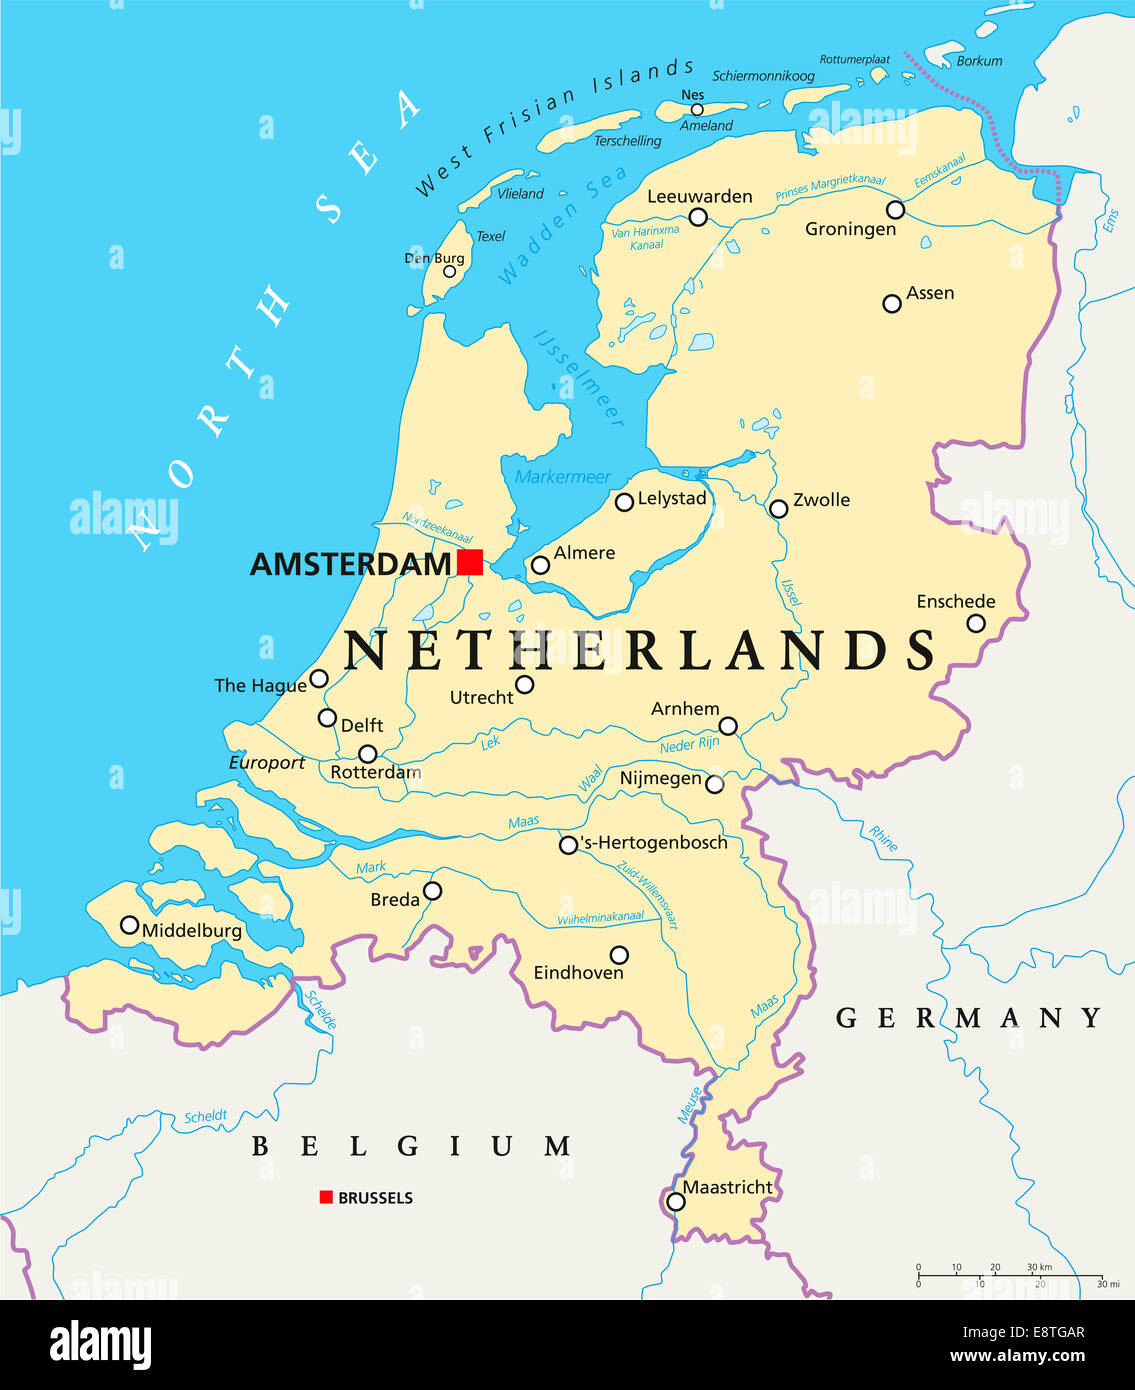 Países Bajos Mapa Político con capital Ámsterdam, las fronteras nacionales, importantes ciudades, ríos y lagos. Rótulos En inglés. Foto de stock